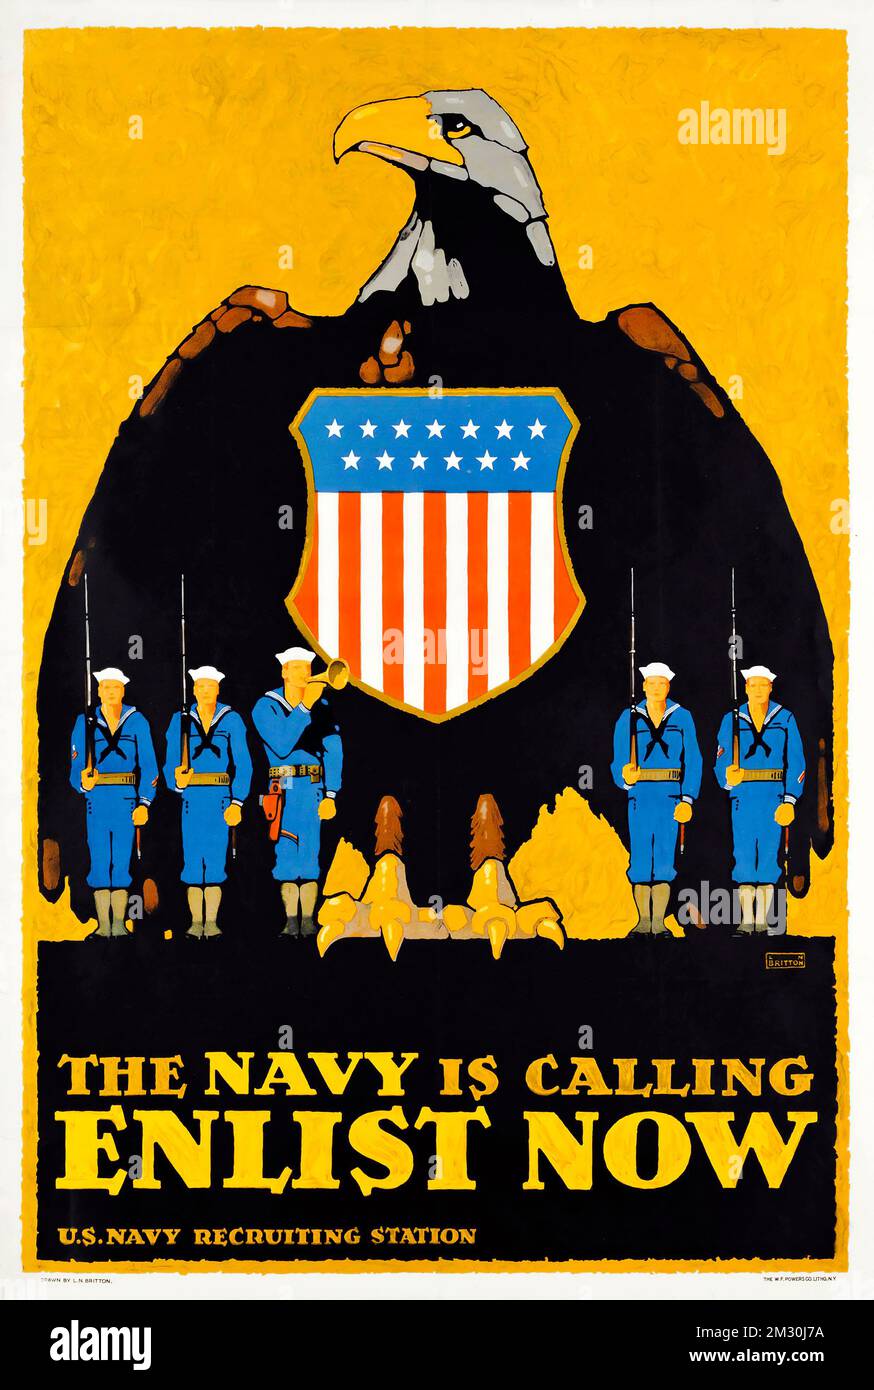 Affiche de recrutement USA - L.N. Britton - ENLIST NOW, feat american Eagle - US Navy Recruiting Station, première Guerre mondiale, 1917 Banque D'Images